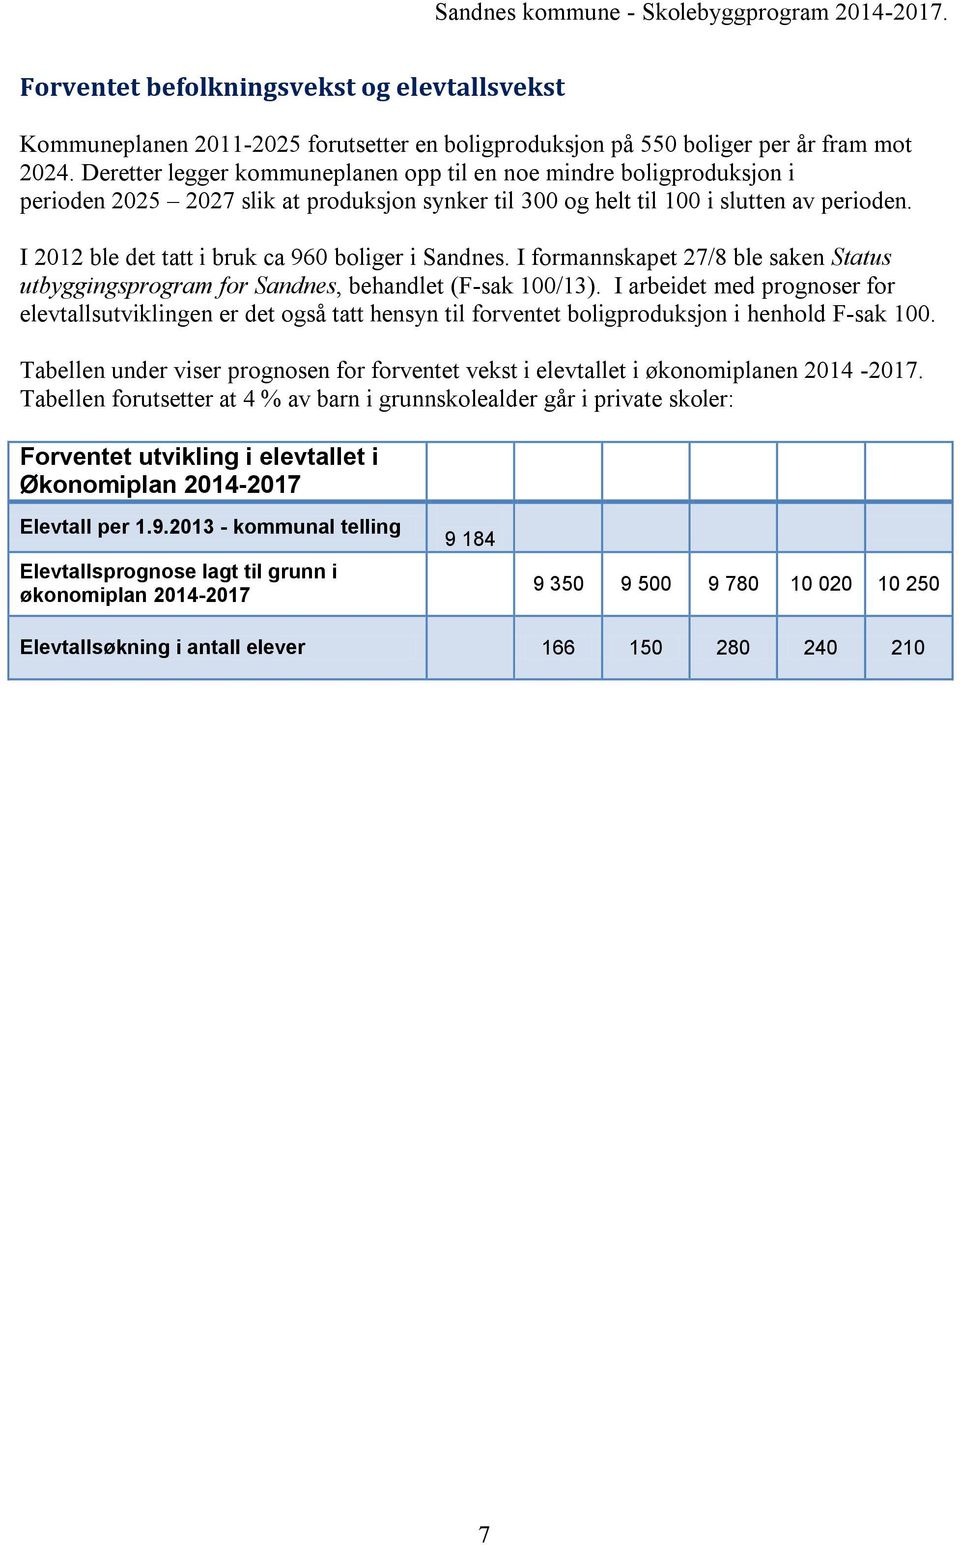 I 2012 ble det tatt i bruk ca 960 boliger i Sandnes. I formannskapet 27/8 ble saken Status utbyggingsprogram for Sandnes, behandlet (F-sak 100/13).